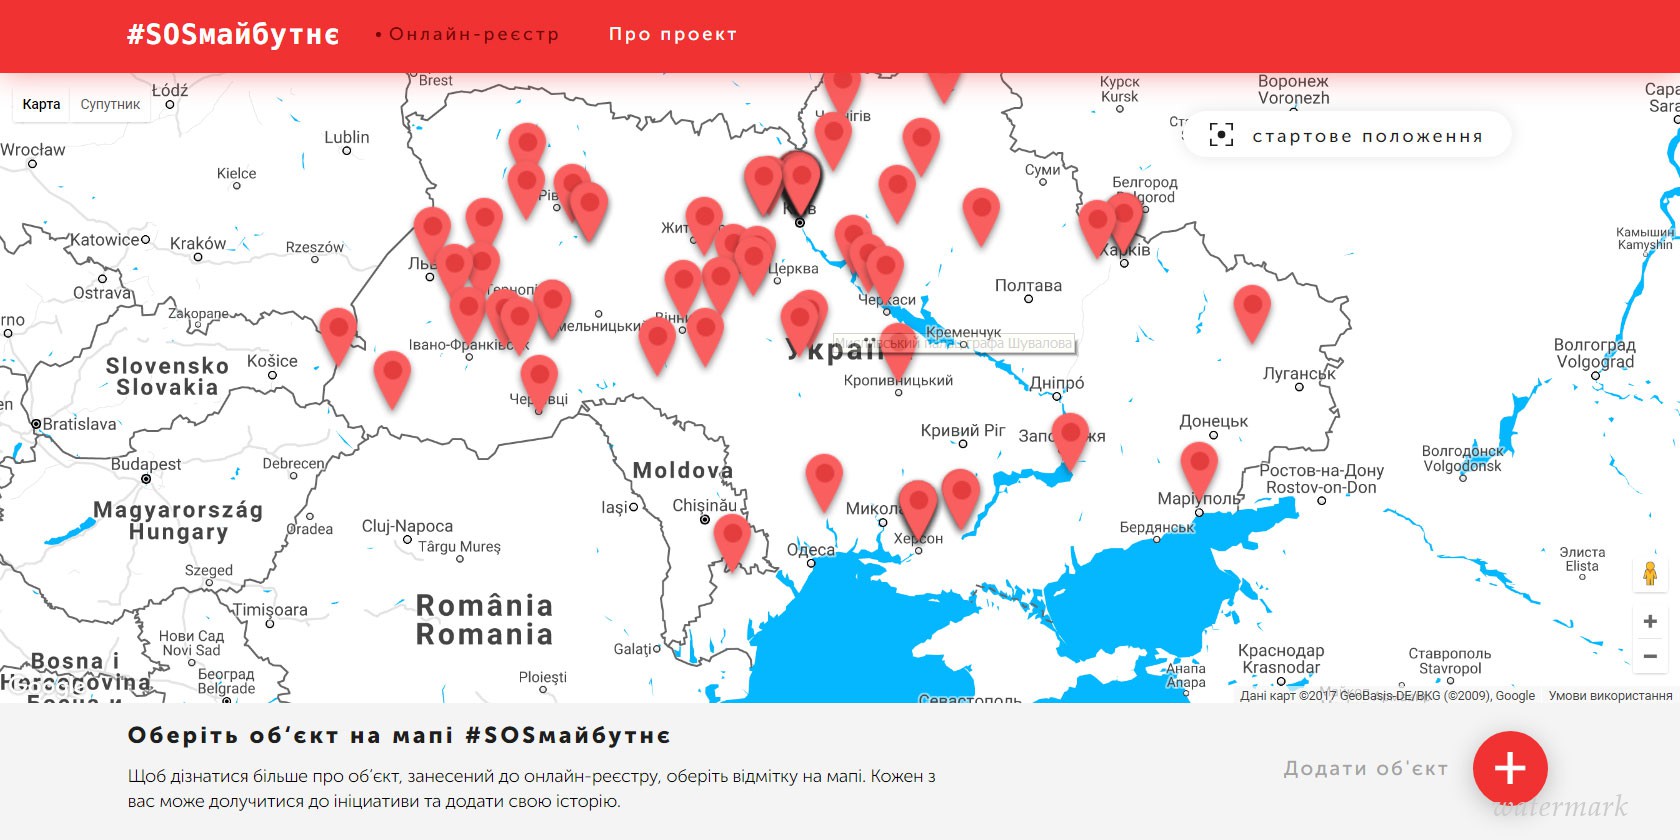 Дебаркадер #SOSмайбутнє создала карту объектов, спрашивающих безотлагательной реставрации